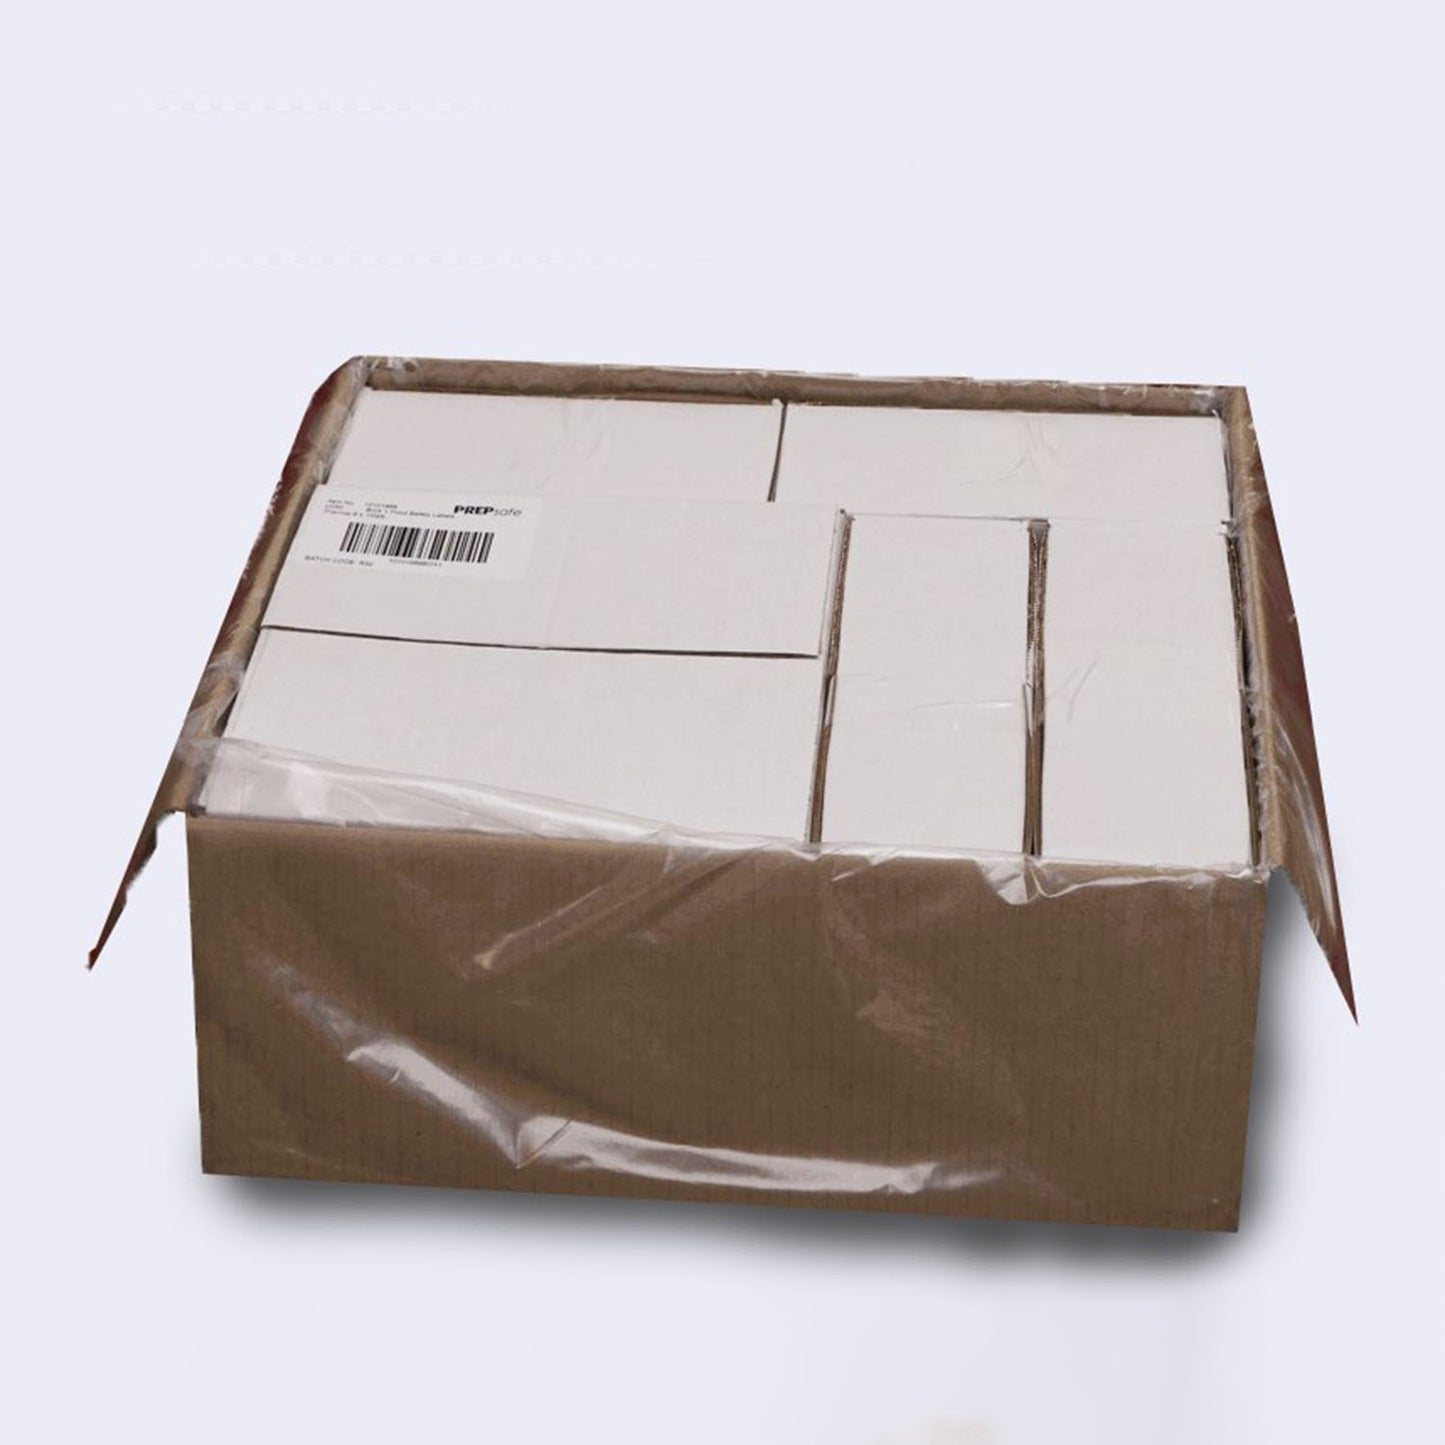 Dissolvable PREPsafe Labels 7 Boxes (7 x 7000 labels)